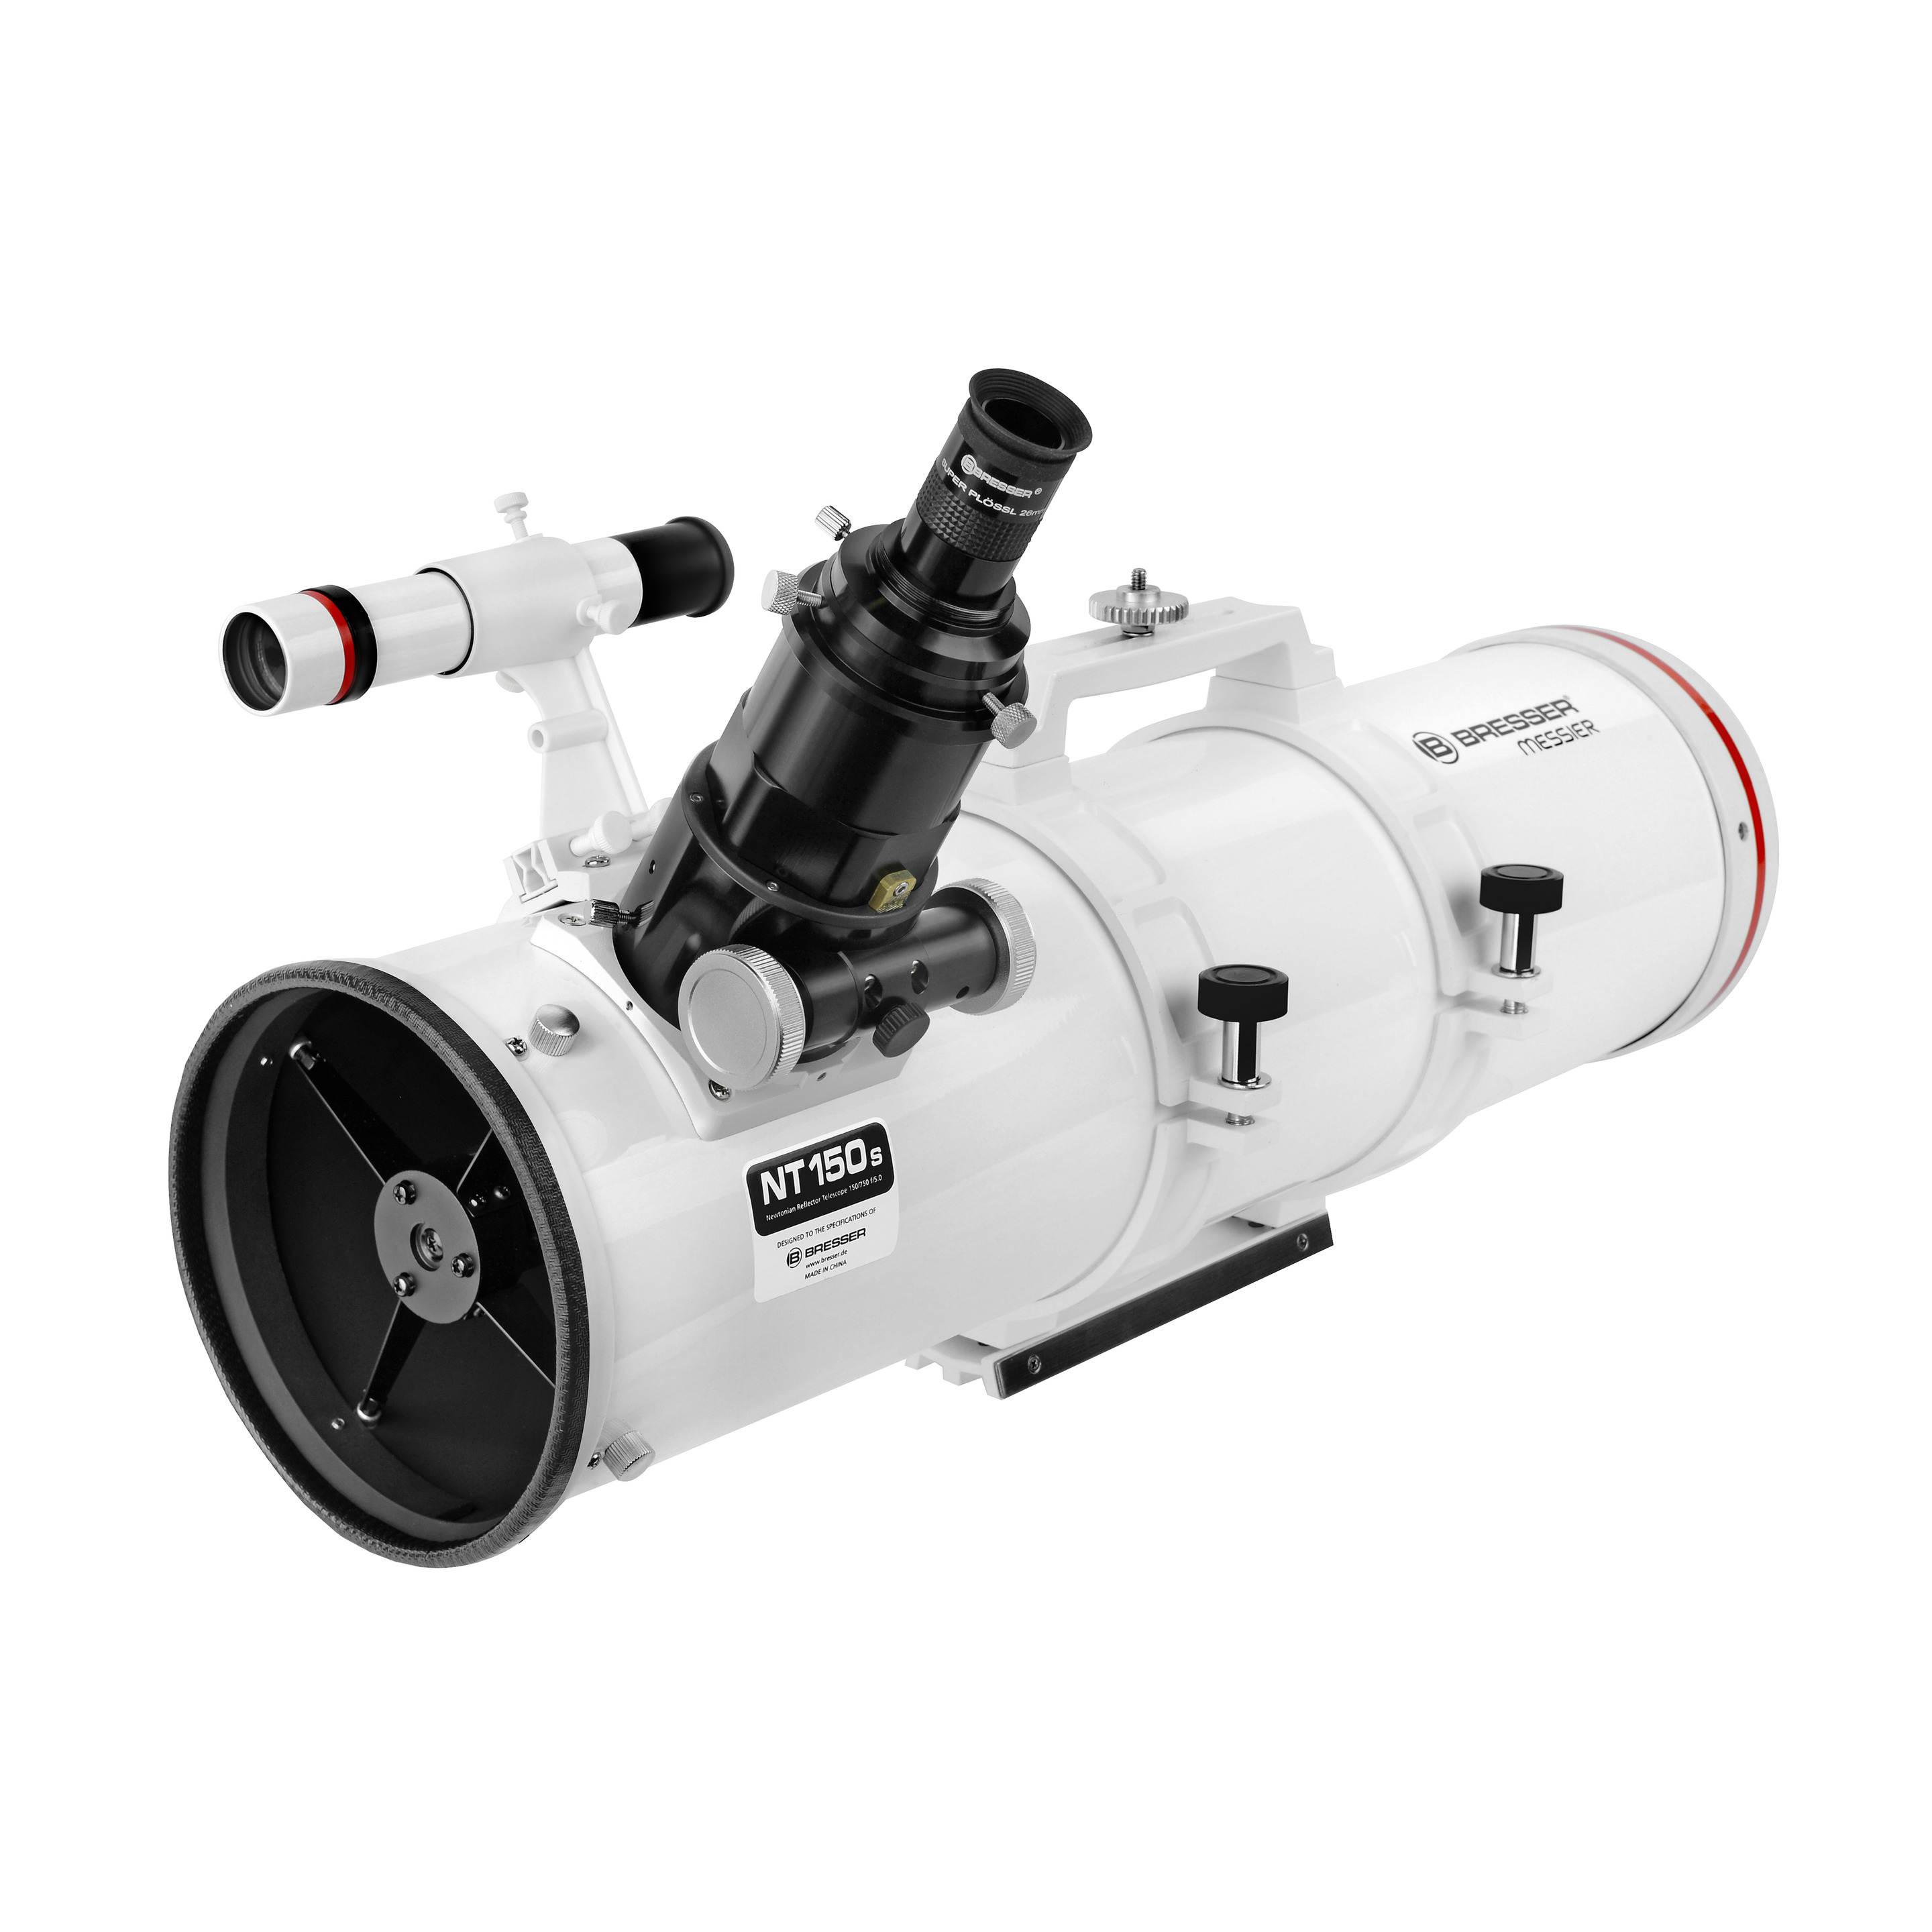 Tubo Óptico Bresser Messier Nt-150s/750 - blanco - 